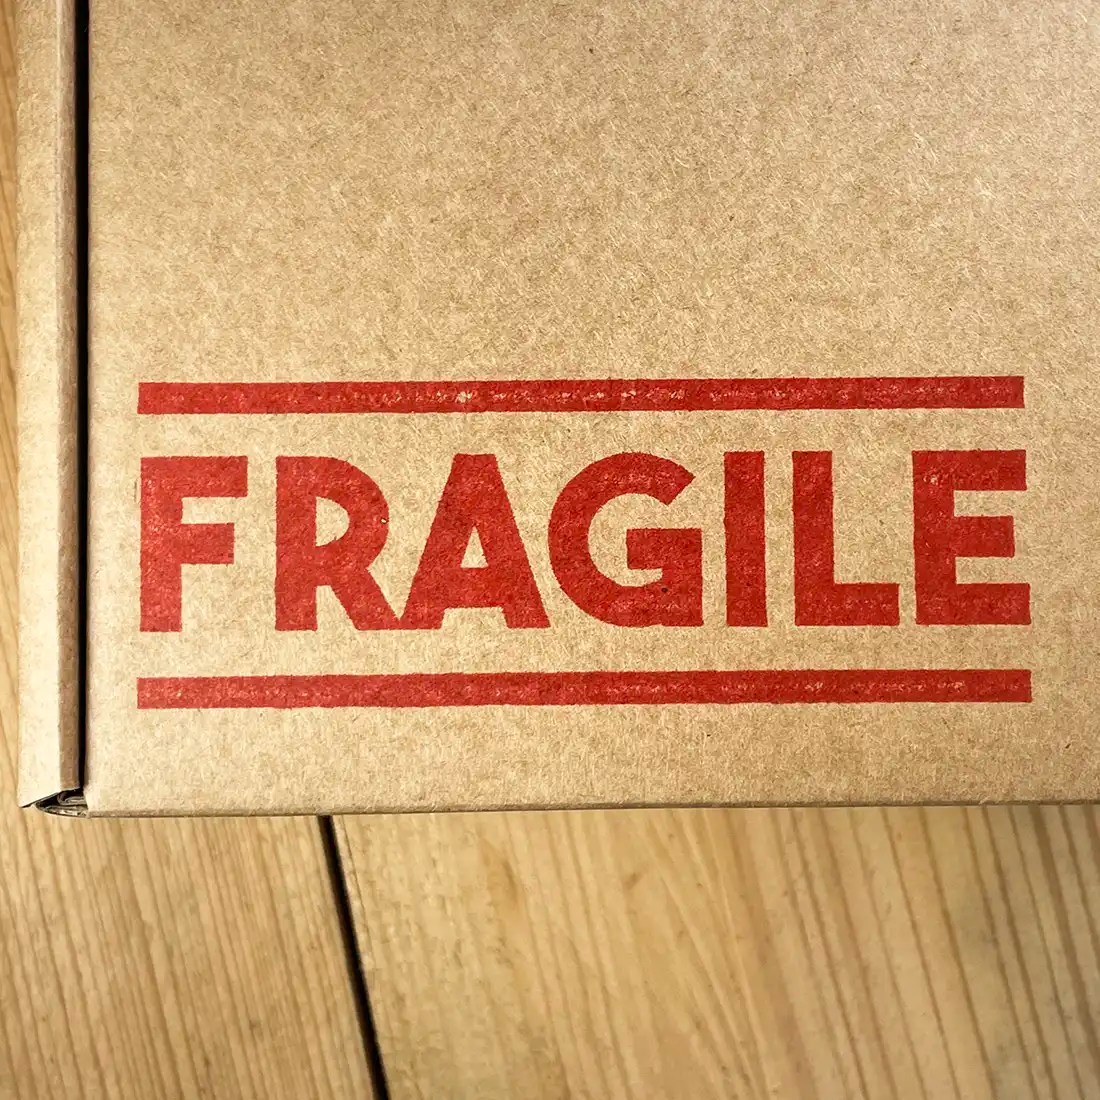 Fragile rubber stamp